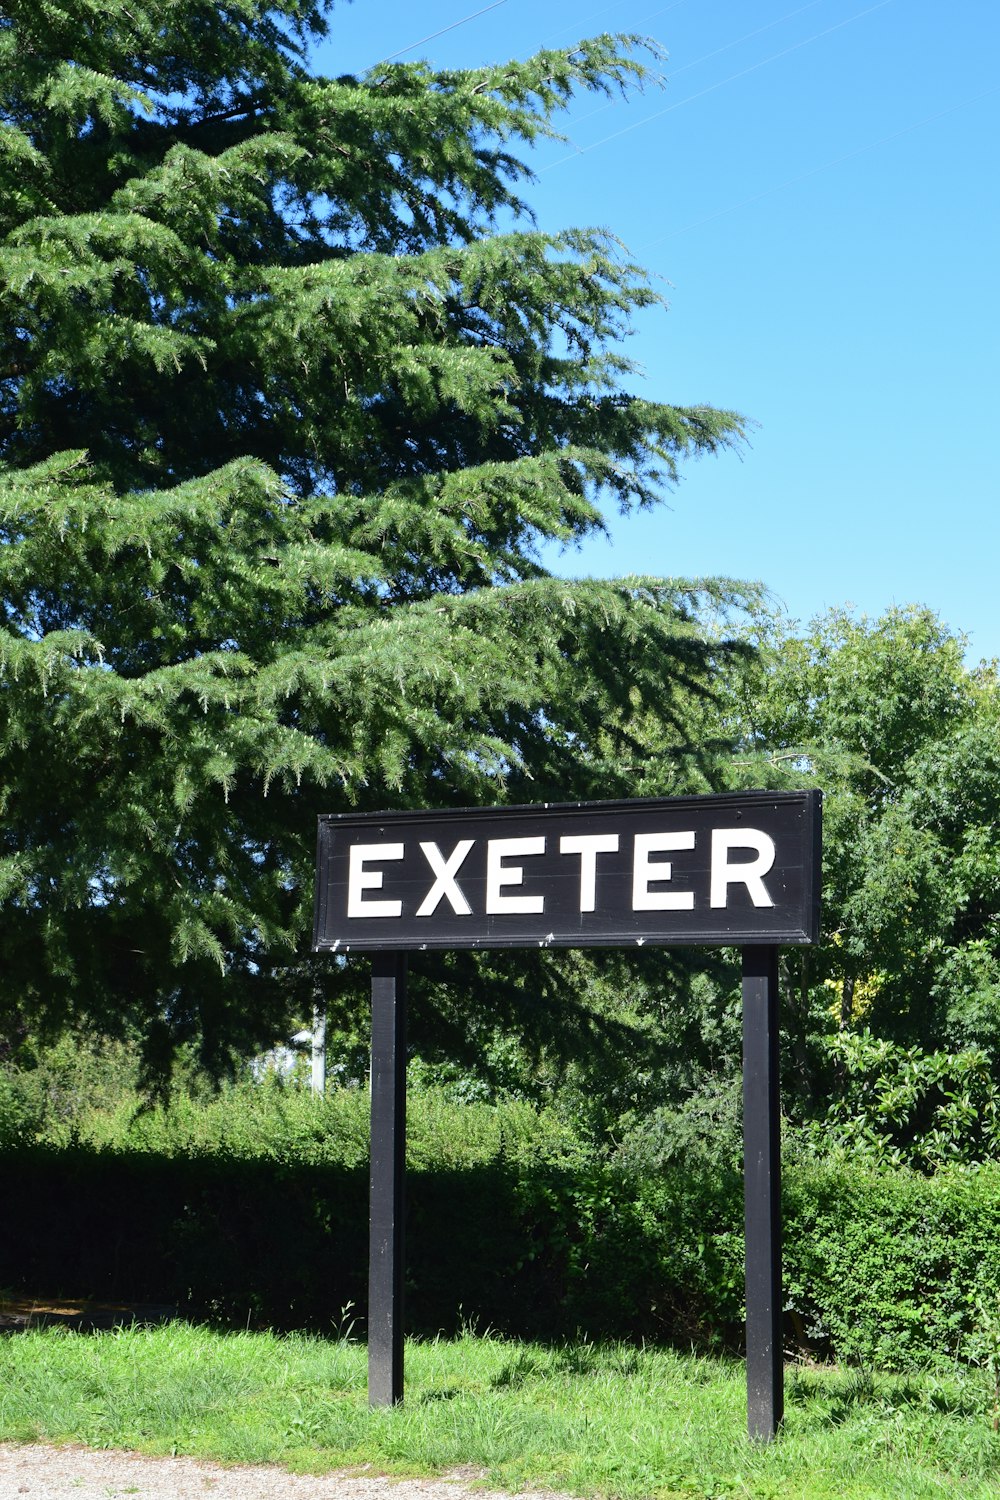 일부 나무 앞에서 Exter라고 표시된 표지판